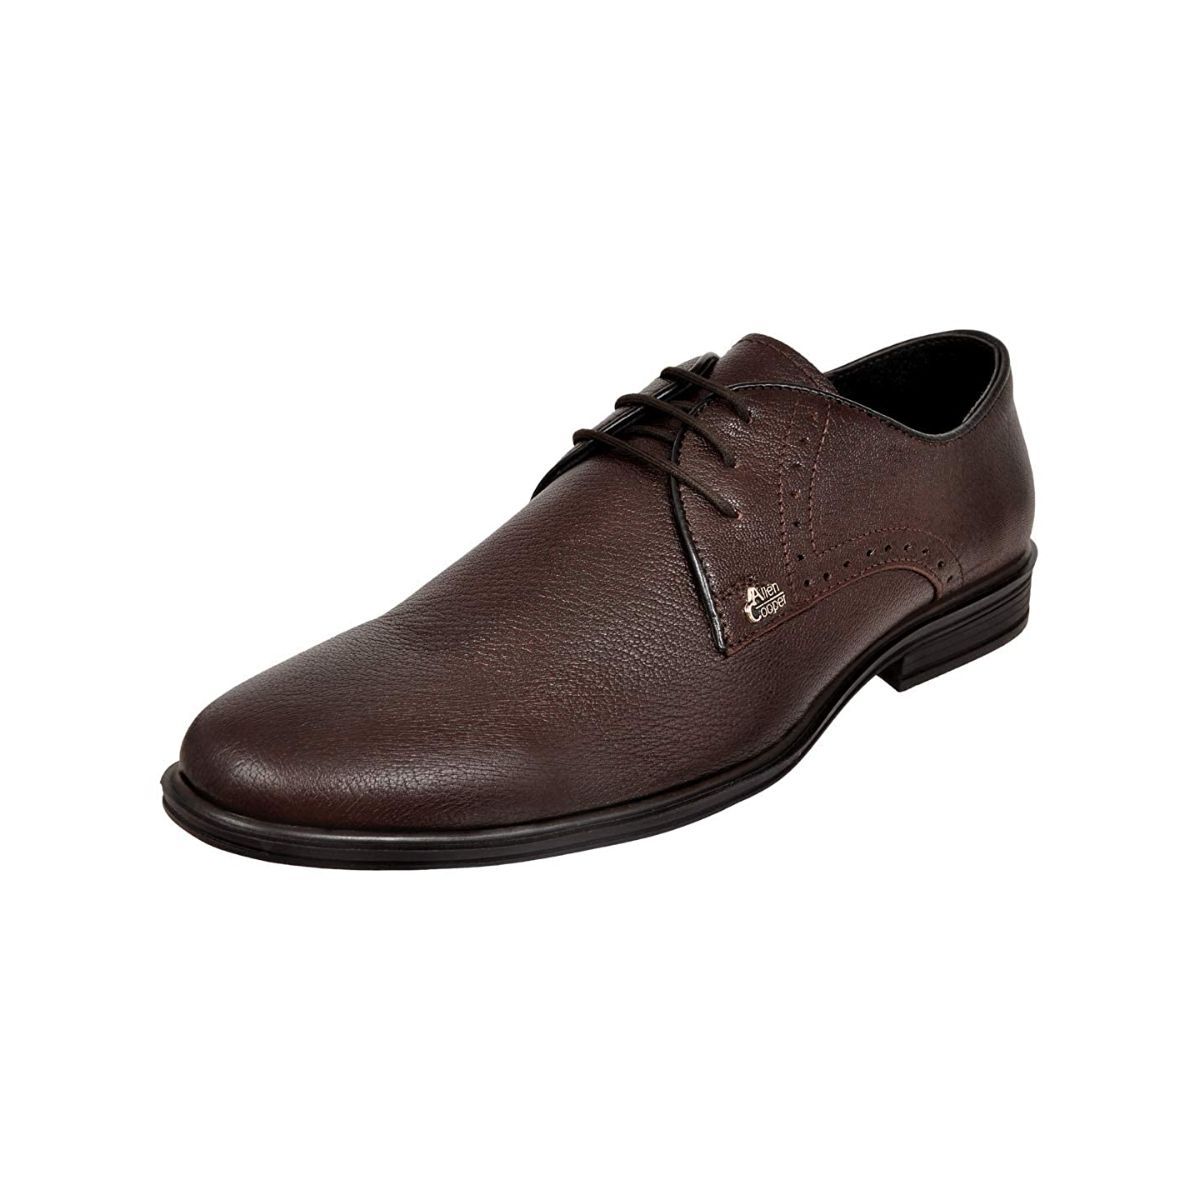 Allen Cooper Brown Formal Shoes For Men - 10